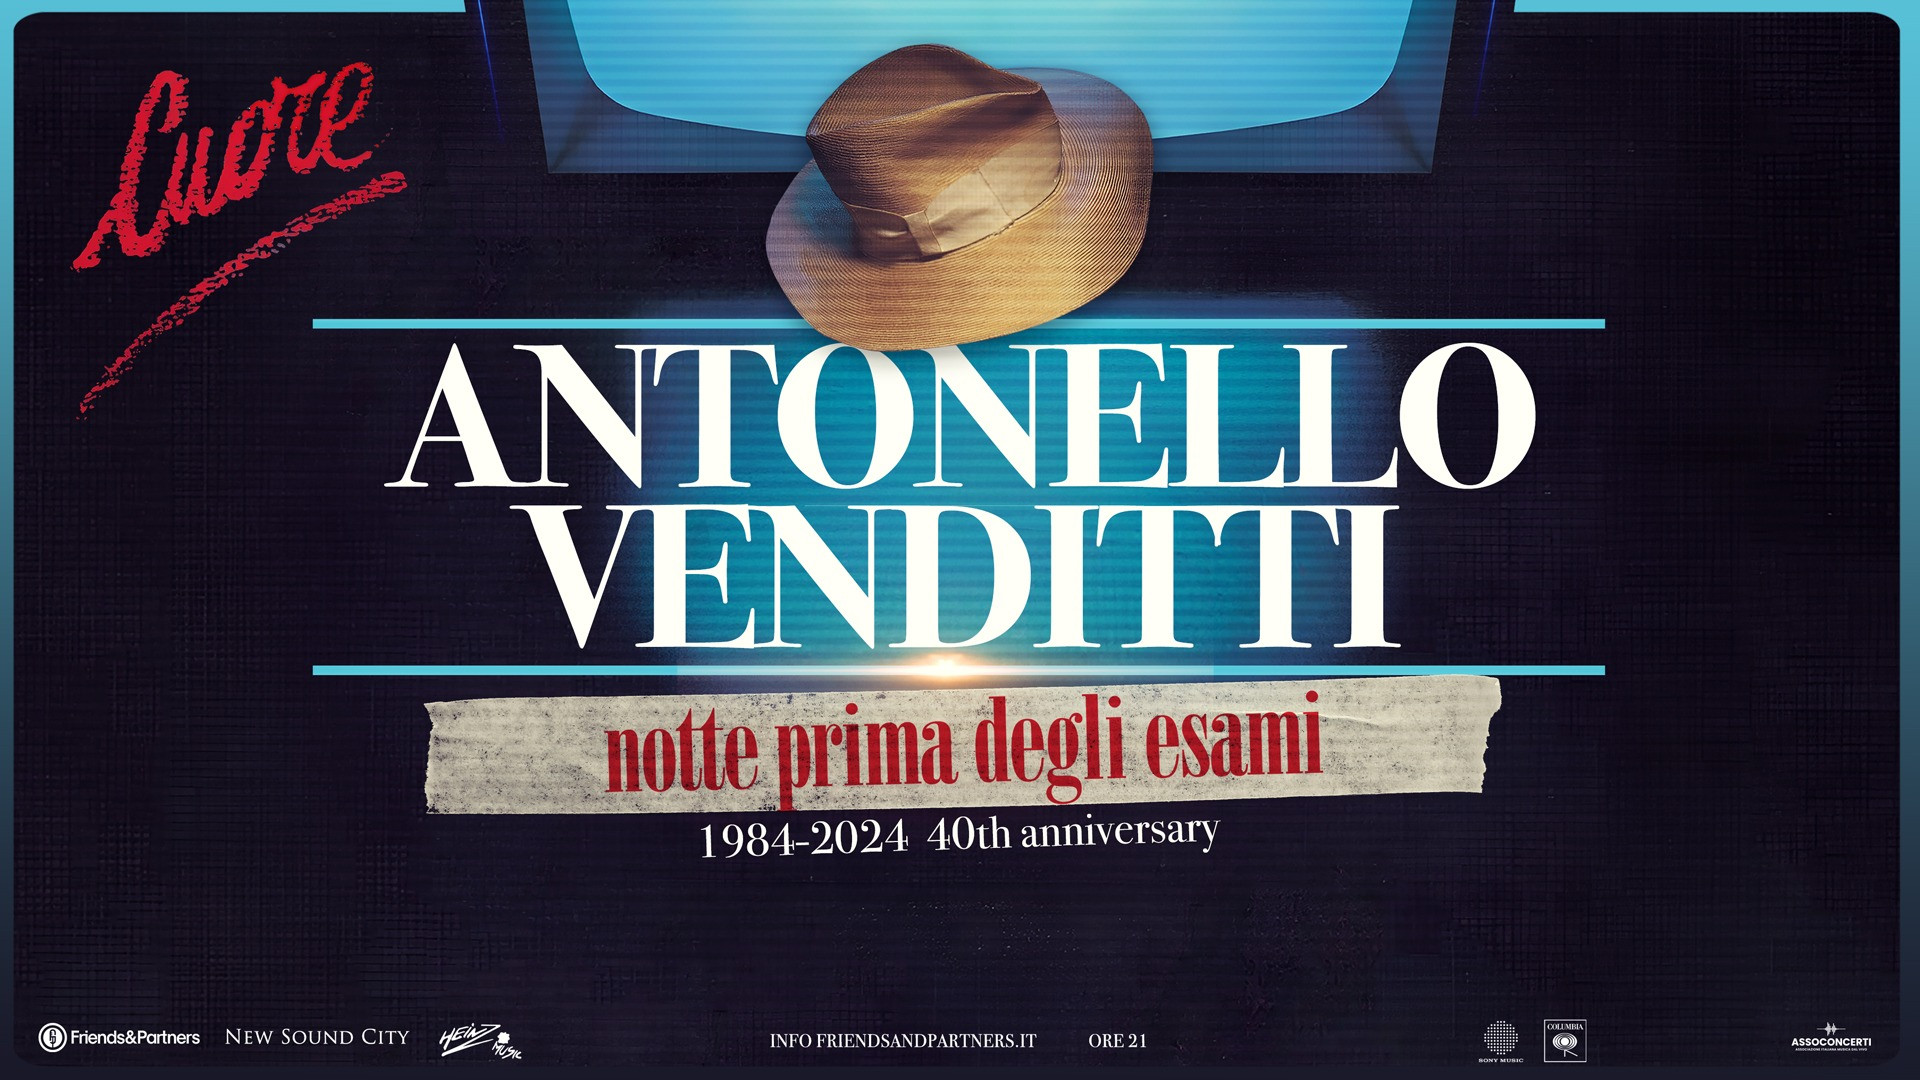 Antonello Venditti Celebra “Cuore”: 40 Anni di Musica